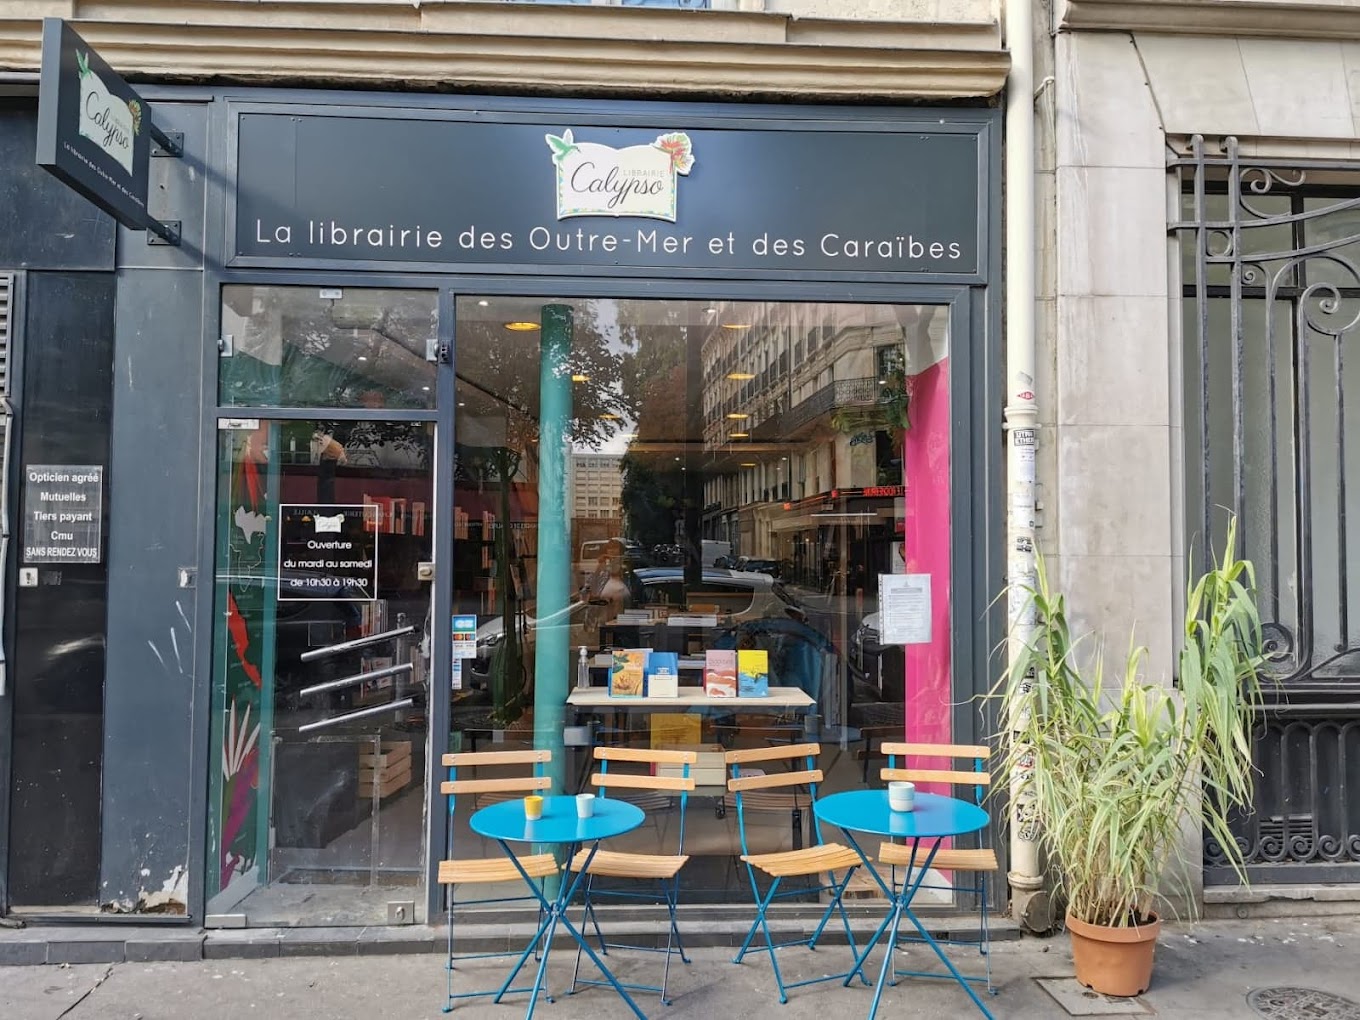     Au cœur de Paris, la librairie Calypso met en lumière la littérature des Caraïbes 

